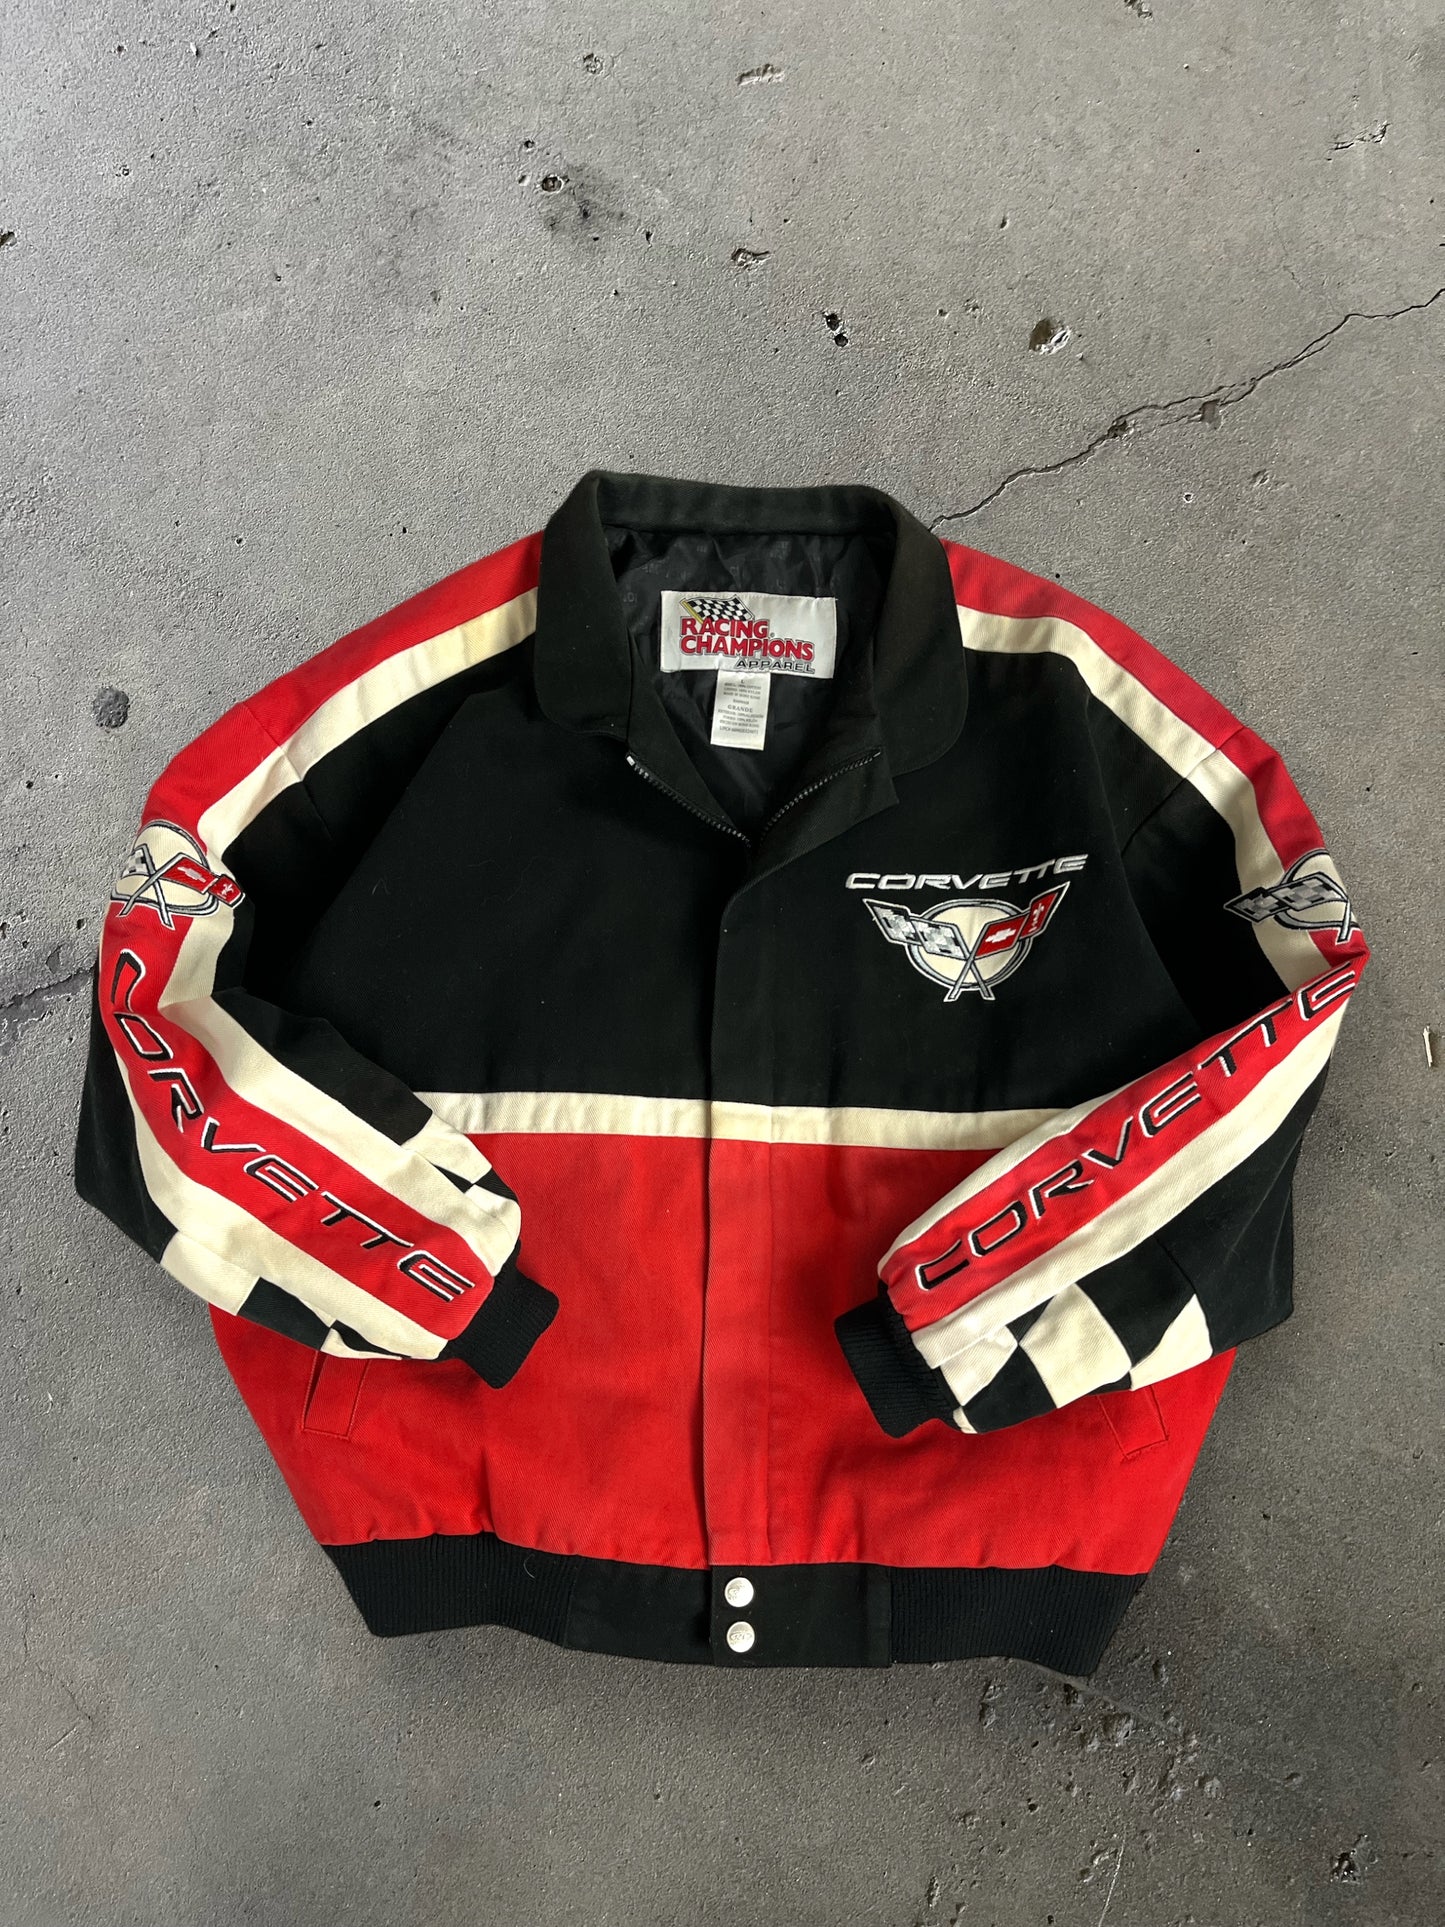 90s Corvette Racing Jacket